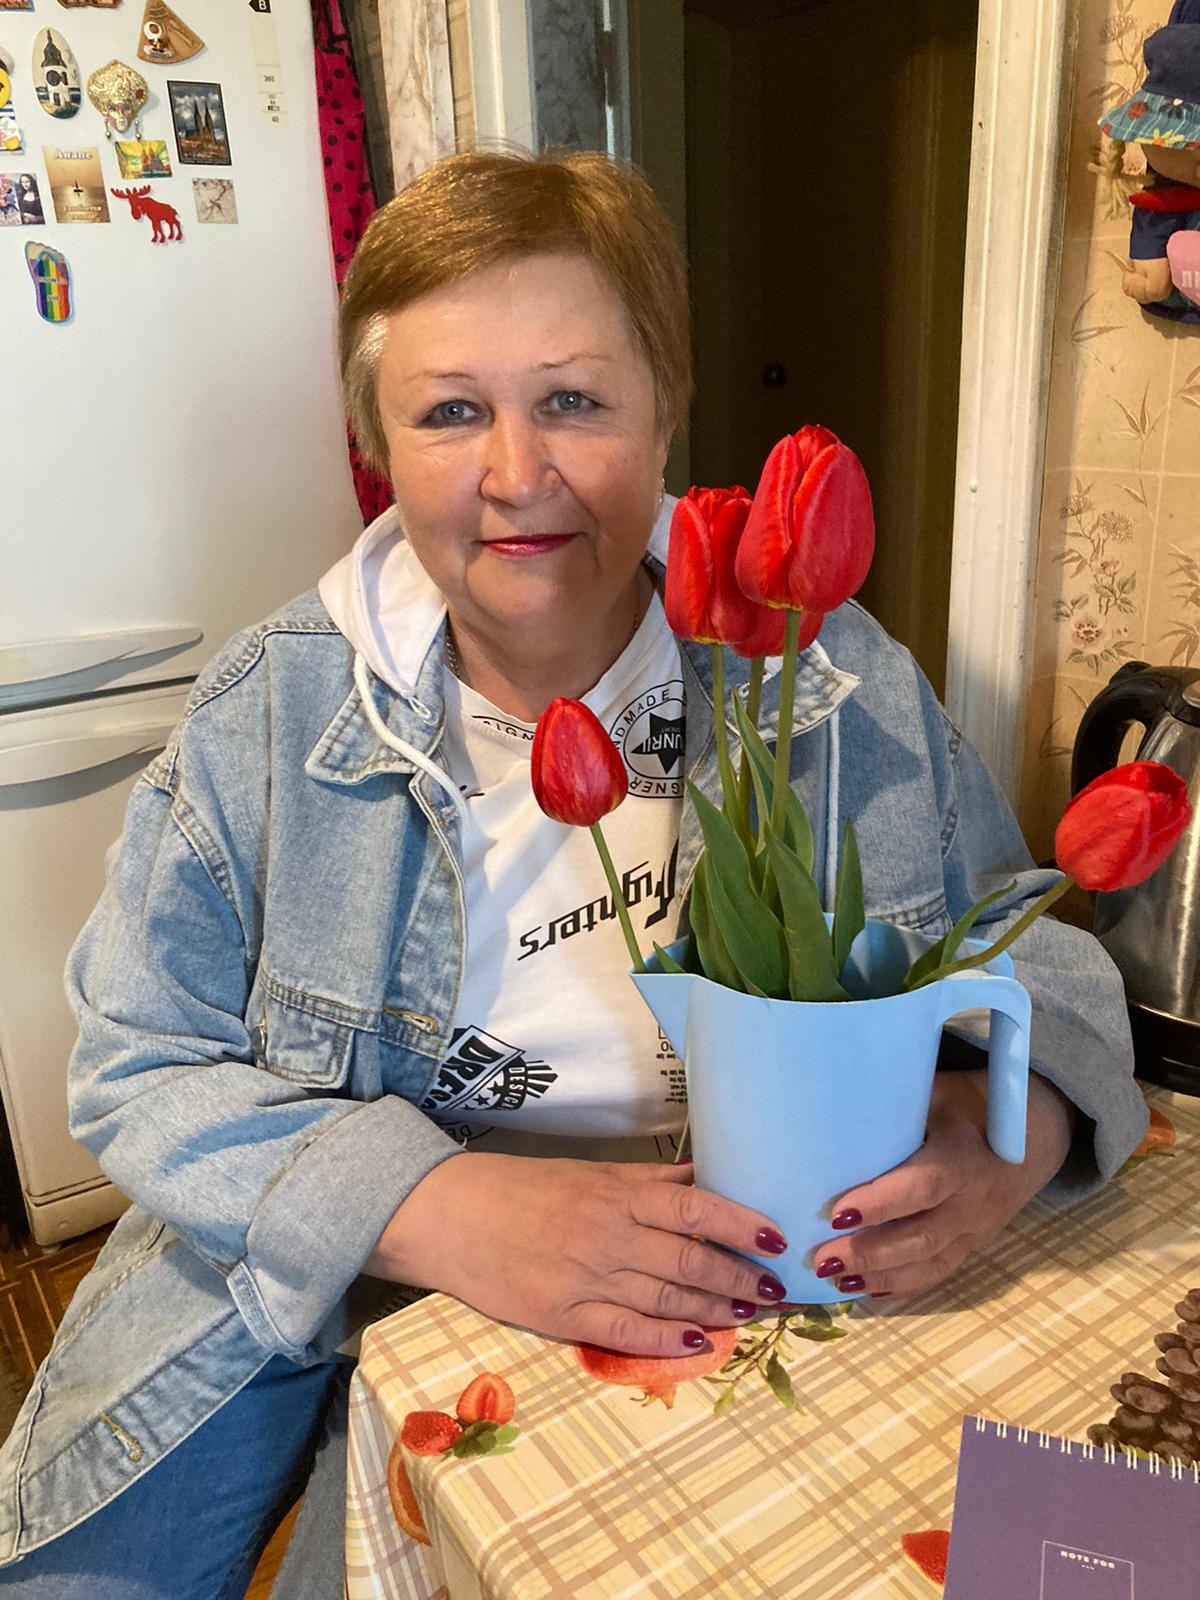 Наталья Струнина обожает цветы. Они у нее и в саду растут, и под окном на ее рукотворной клумбе. Все любимые - розы, хризантемы, тюльпаны… 